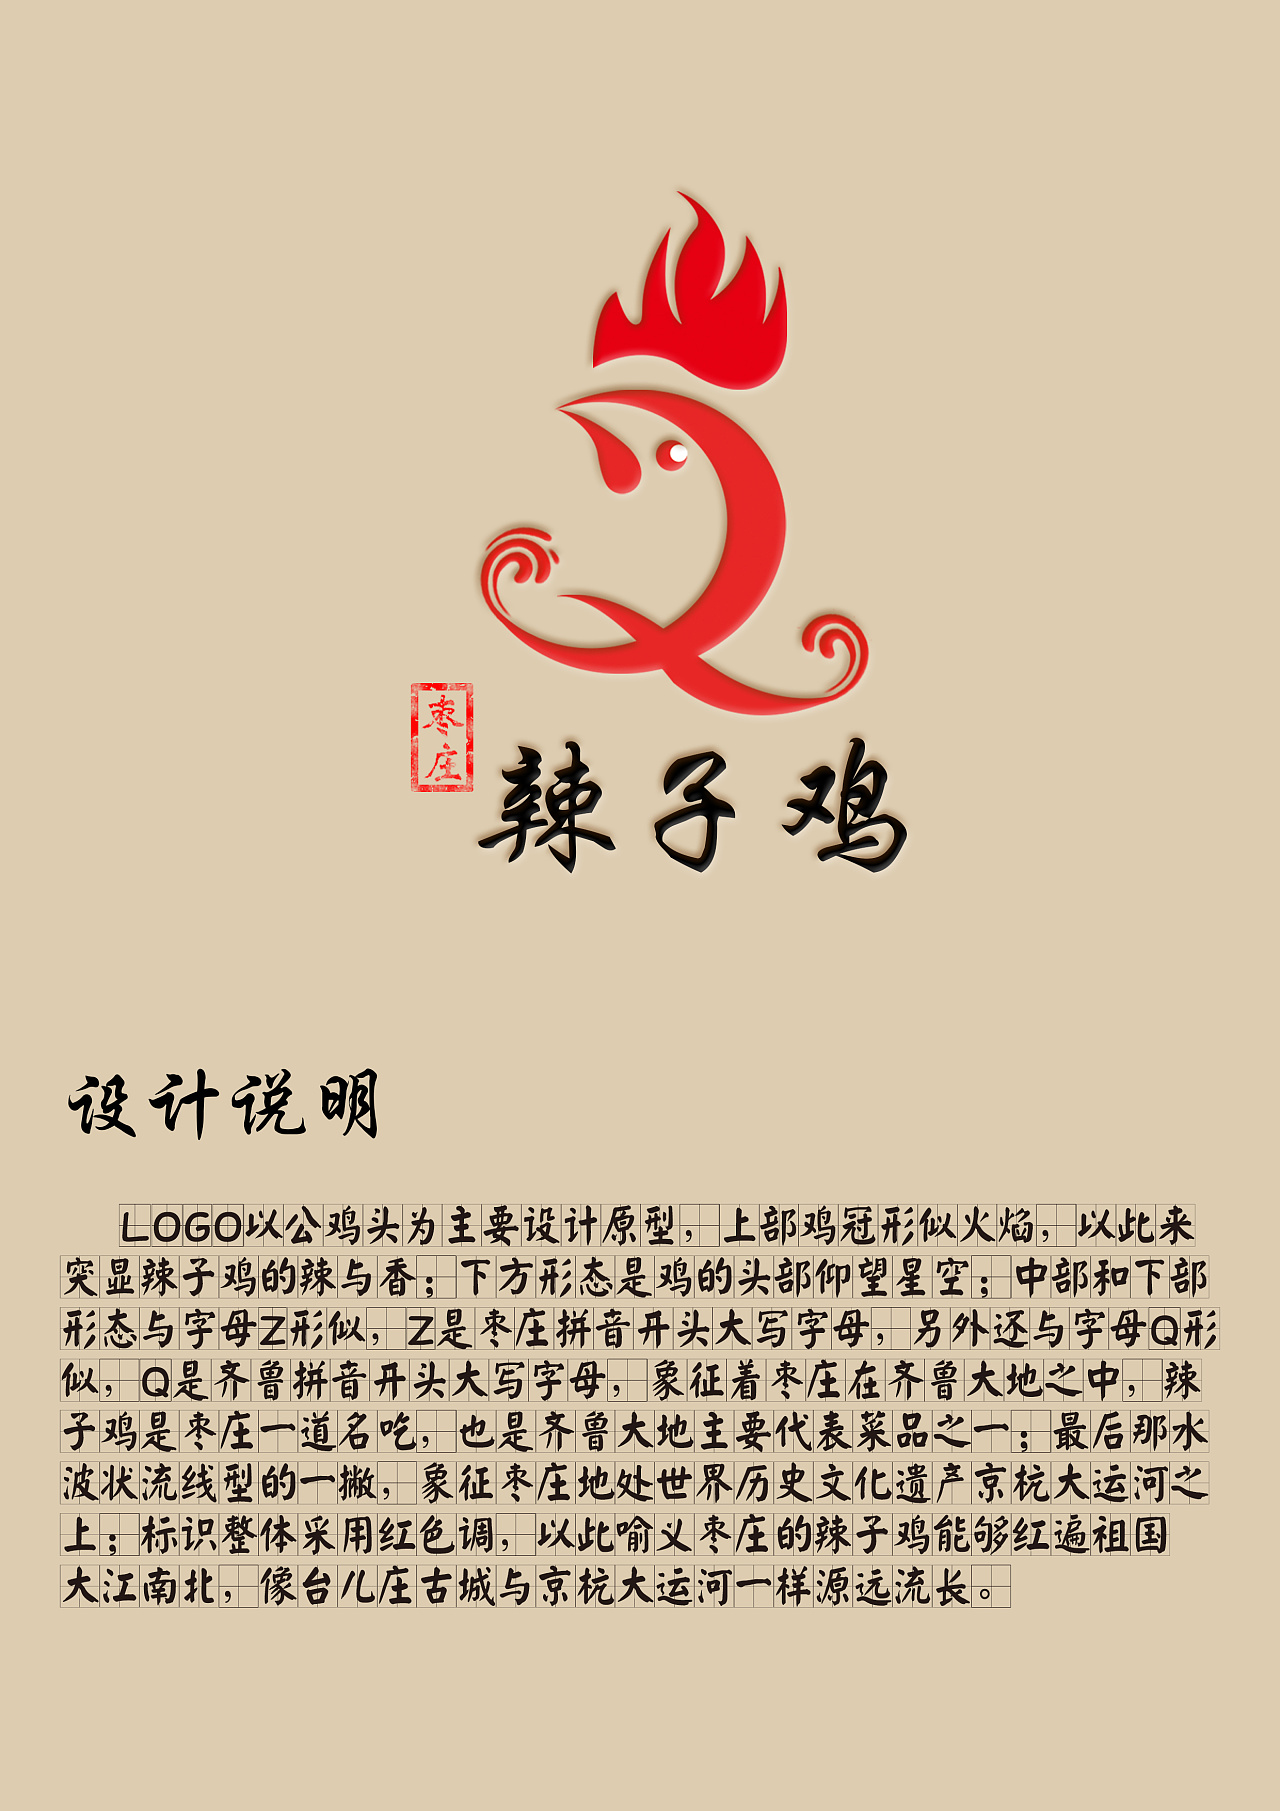 山东枣庄辣子鸡logo